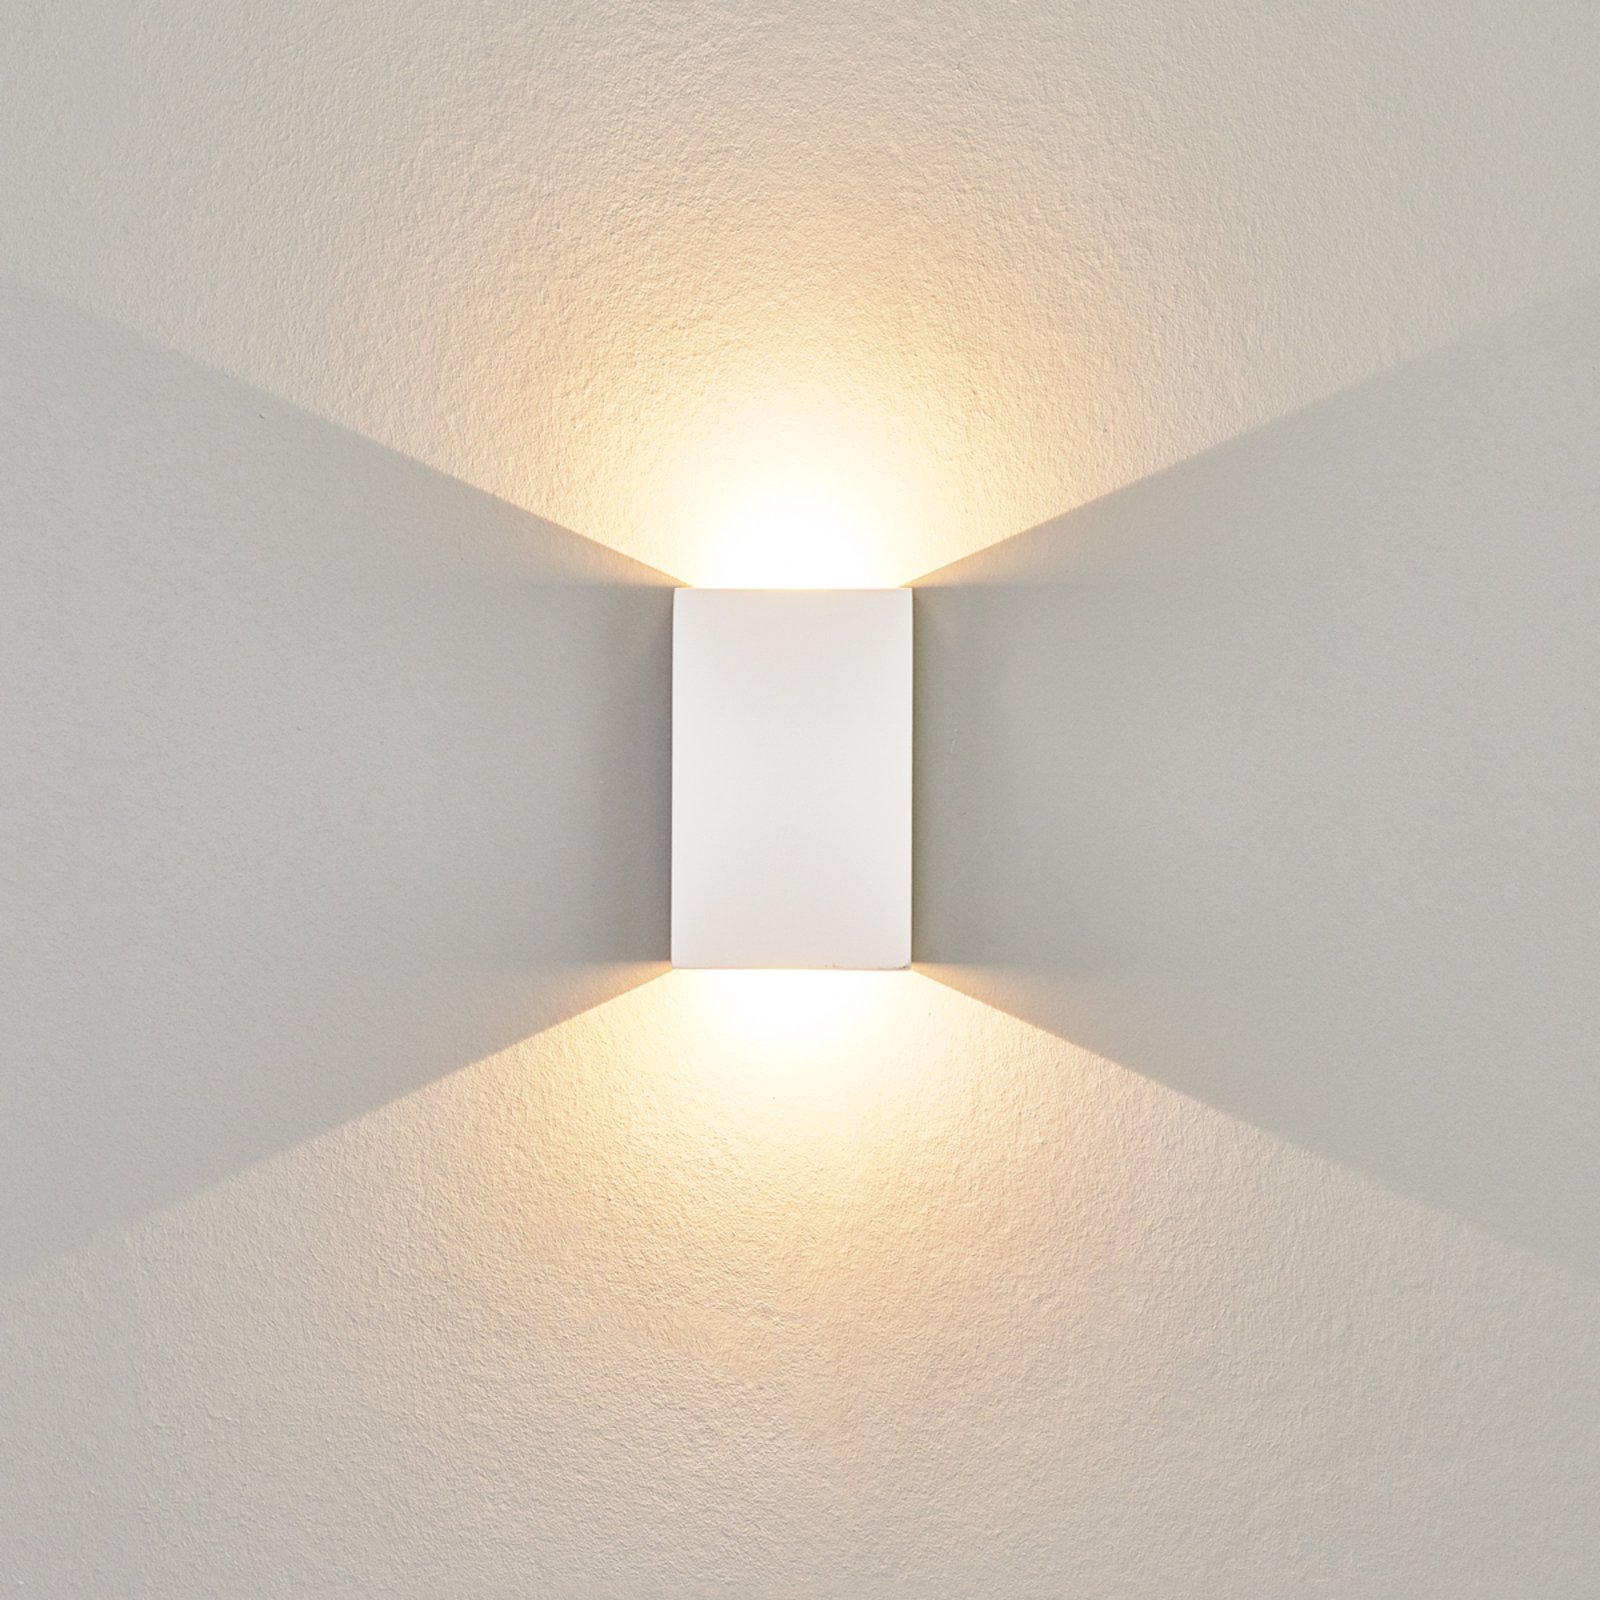 LED-vegglampe Fabiola av gips, 16 cm høy